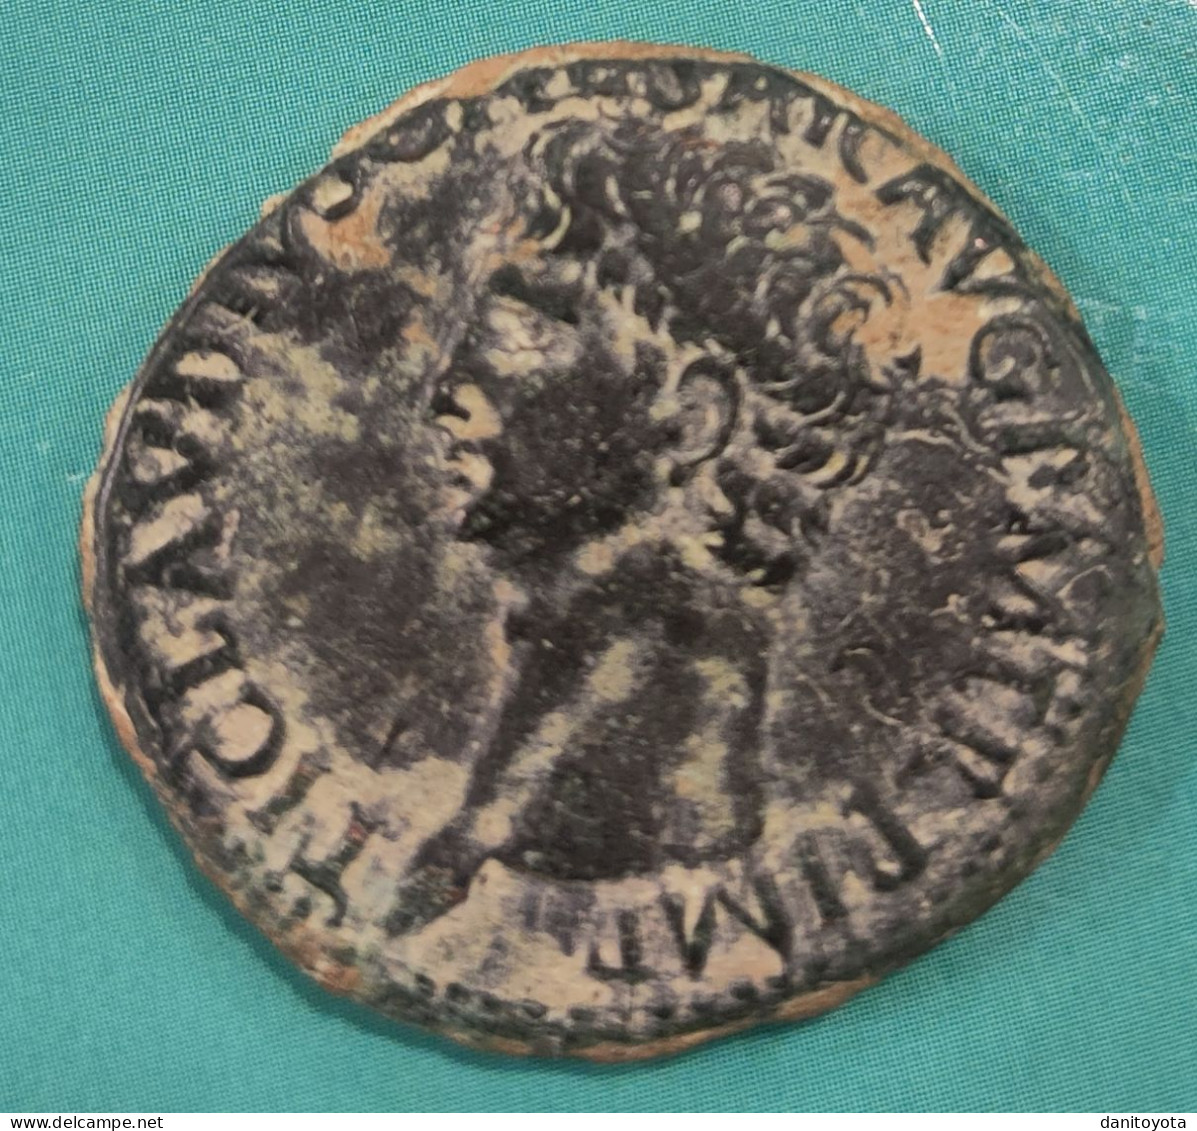 IMPERIO ROMANO. CLAUDIO. AS. AÑO 41/54 D.C.  REF A/F16 - Die Julio-Claudische Dynastie (-27 / 69)